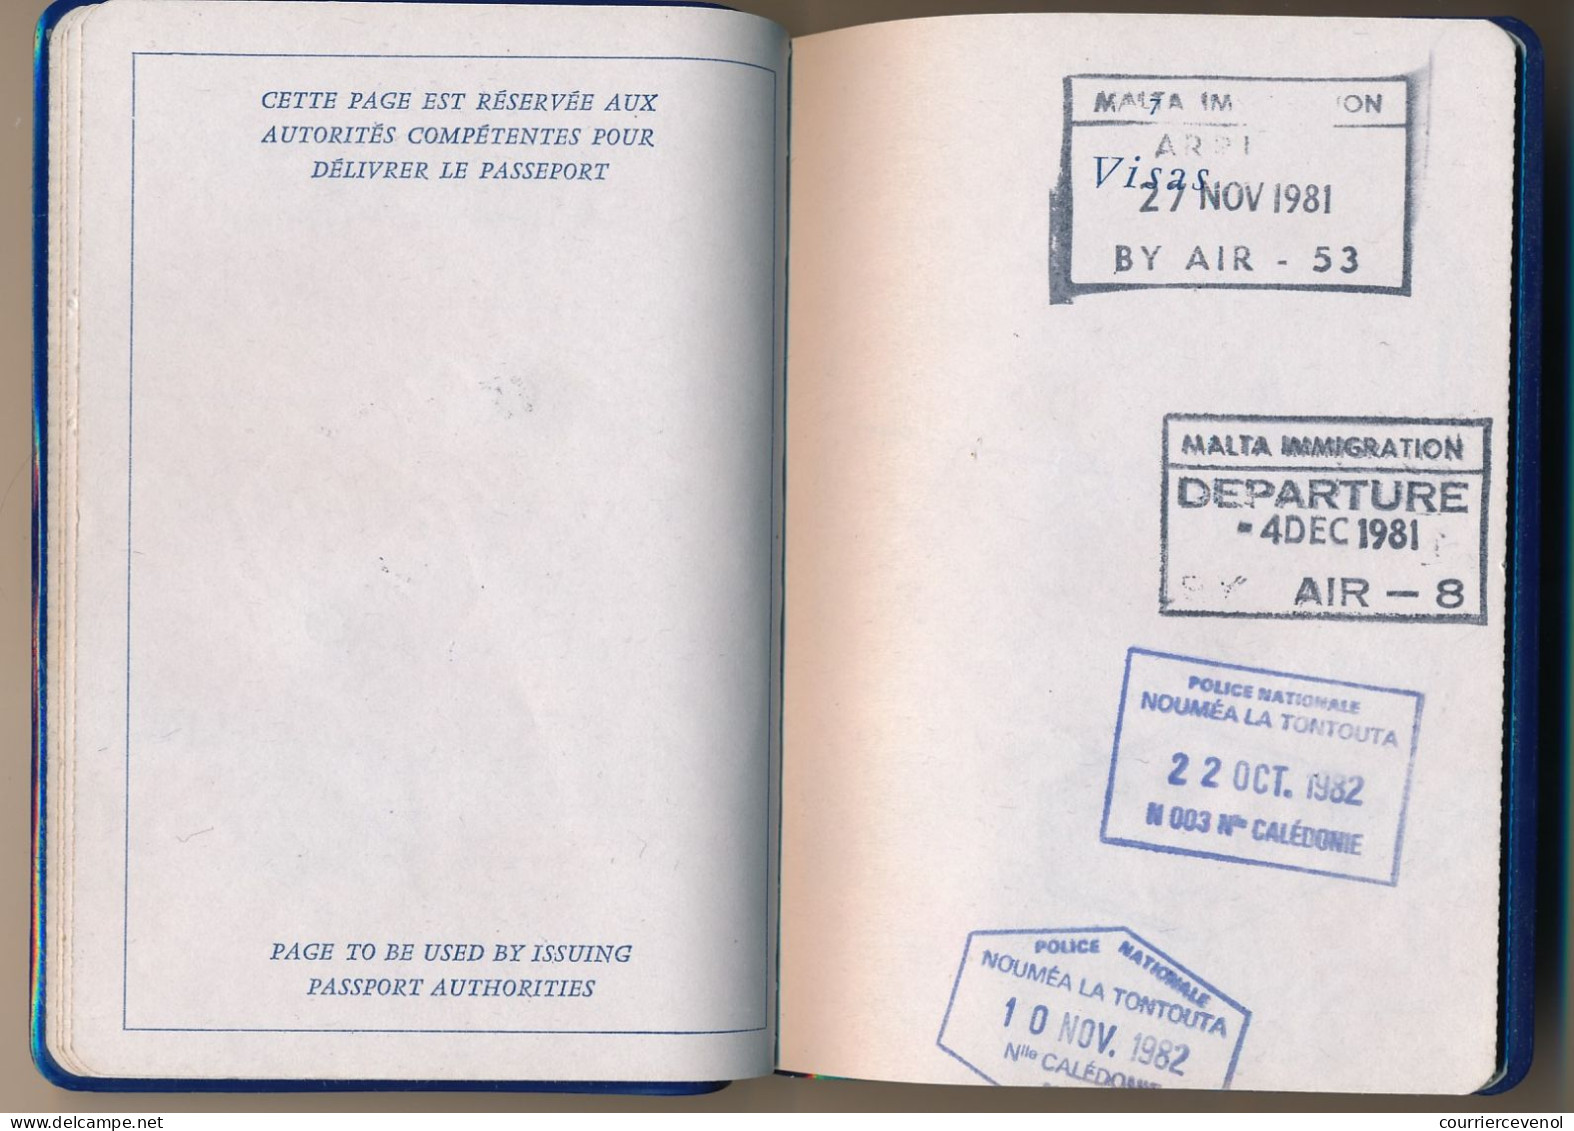 FRANCE / EGYPTE - Passeport émis à Paris 1981 (Fiscal 200,00F) + fiscaux Egyptiens / Ambassade Egypte à Paris 1984